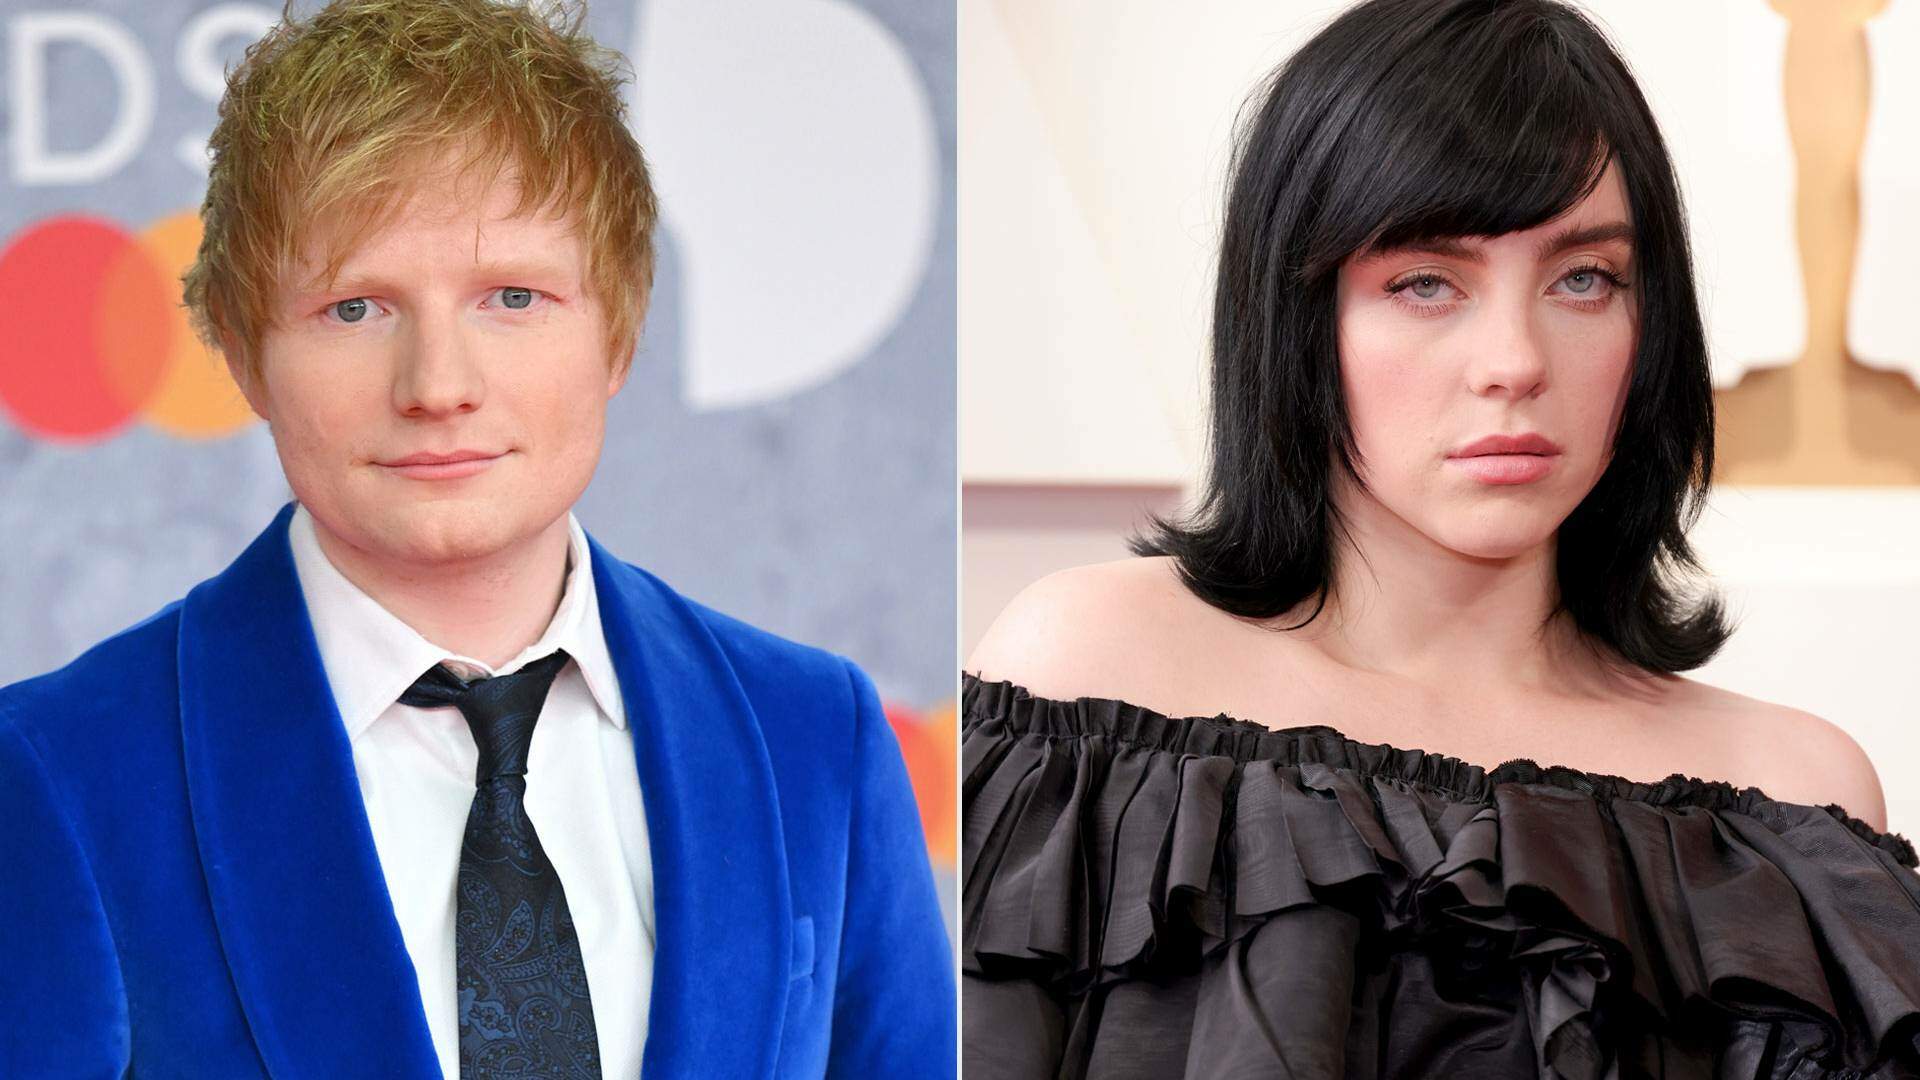 Ed Sheeran revela chateação com Billie Eilish por motivo inusitado e choca fãs - Metropolitana FM